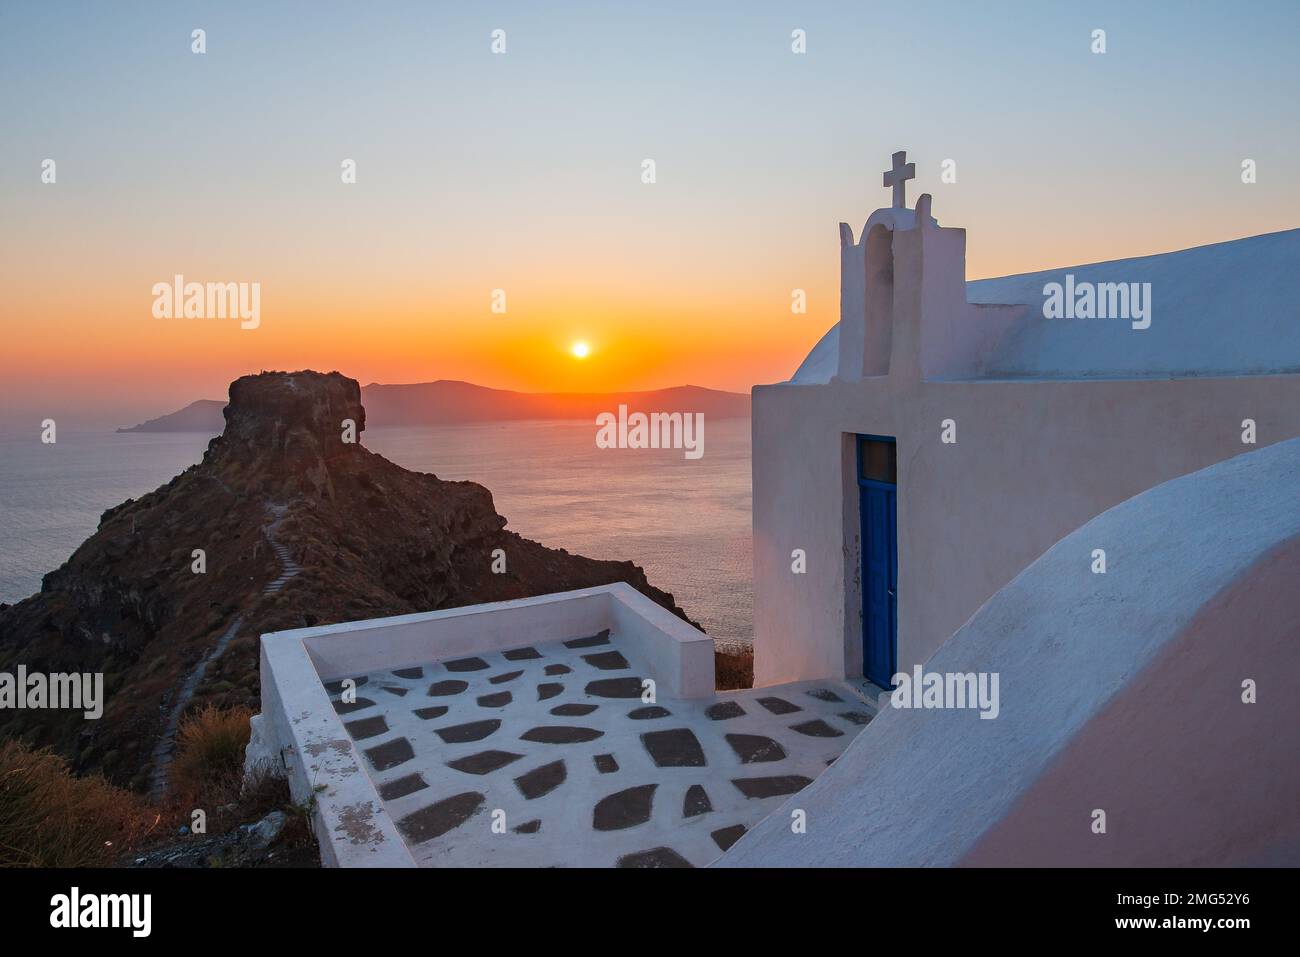 Vue sur le rocher de Skaros, un promontoire rocheux qui dépasse de la mer Égée bleu azur, Imerovigli, Santorin, Grèce Banque D'Images